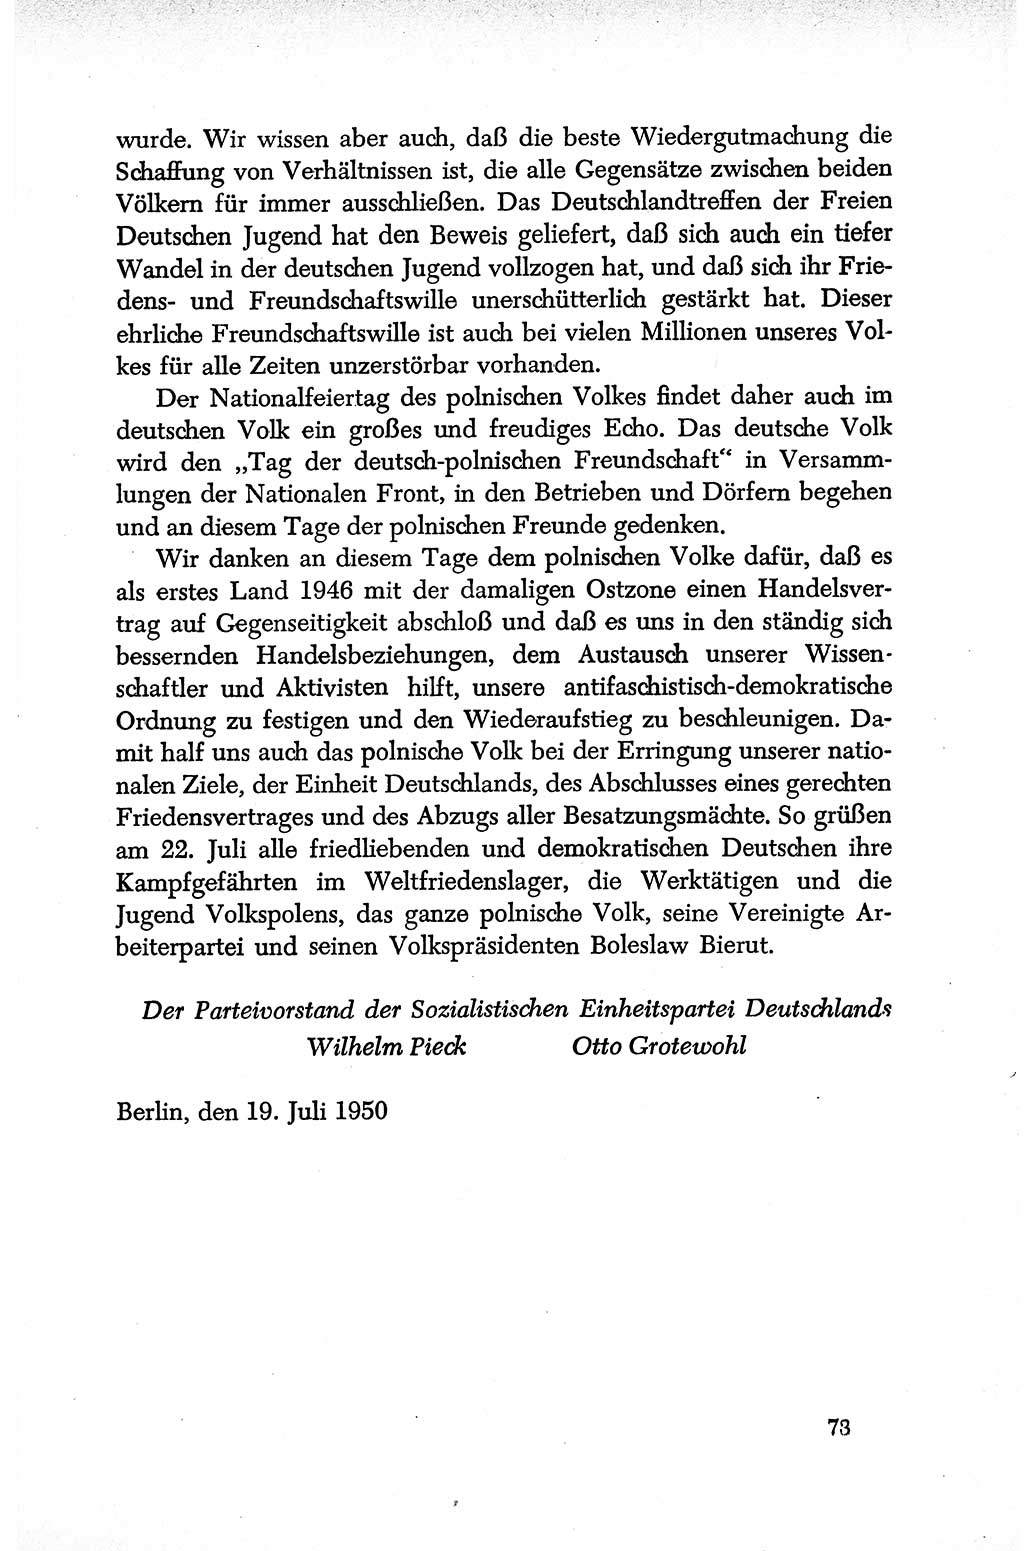 Dokumente der Sozialistischen Einheitspartei Deutschlands (SED) [Deutsche Demokratische Republik (DDR)] 1950-1952, Seite 73 (Dok. SED DDR 1950-1952, S. 73)